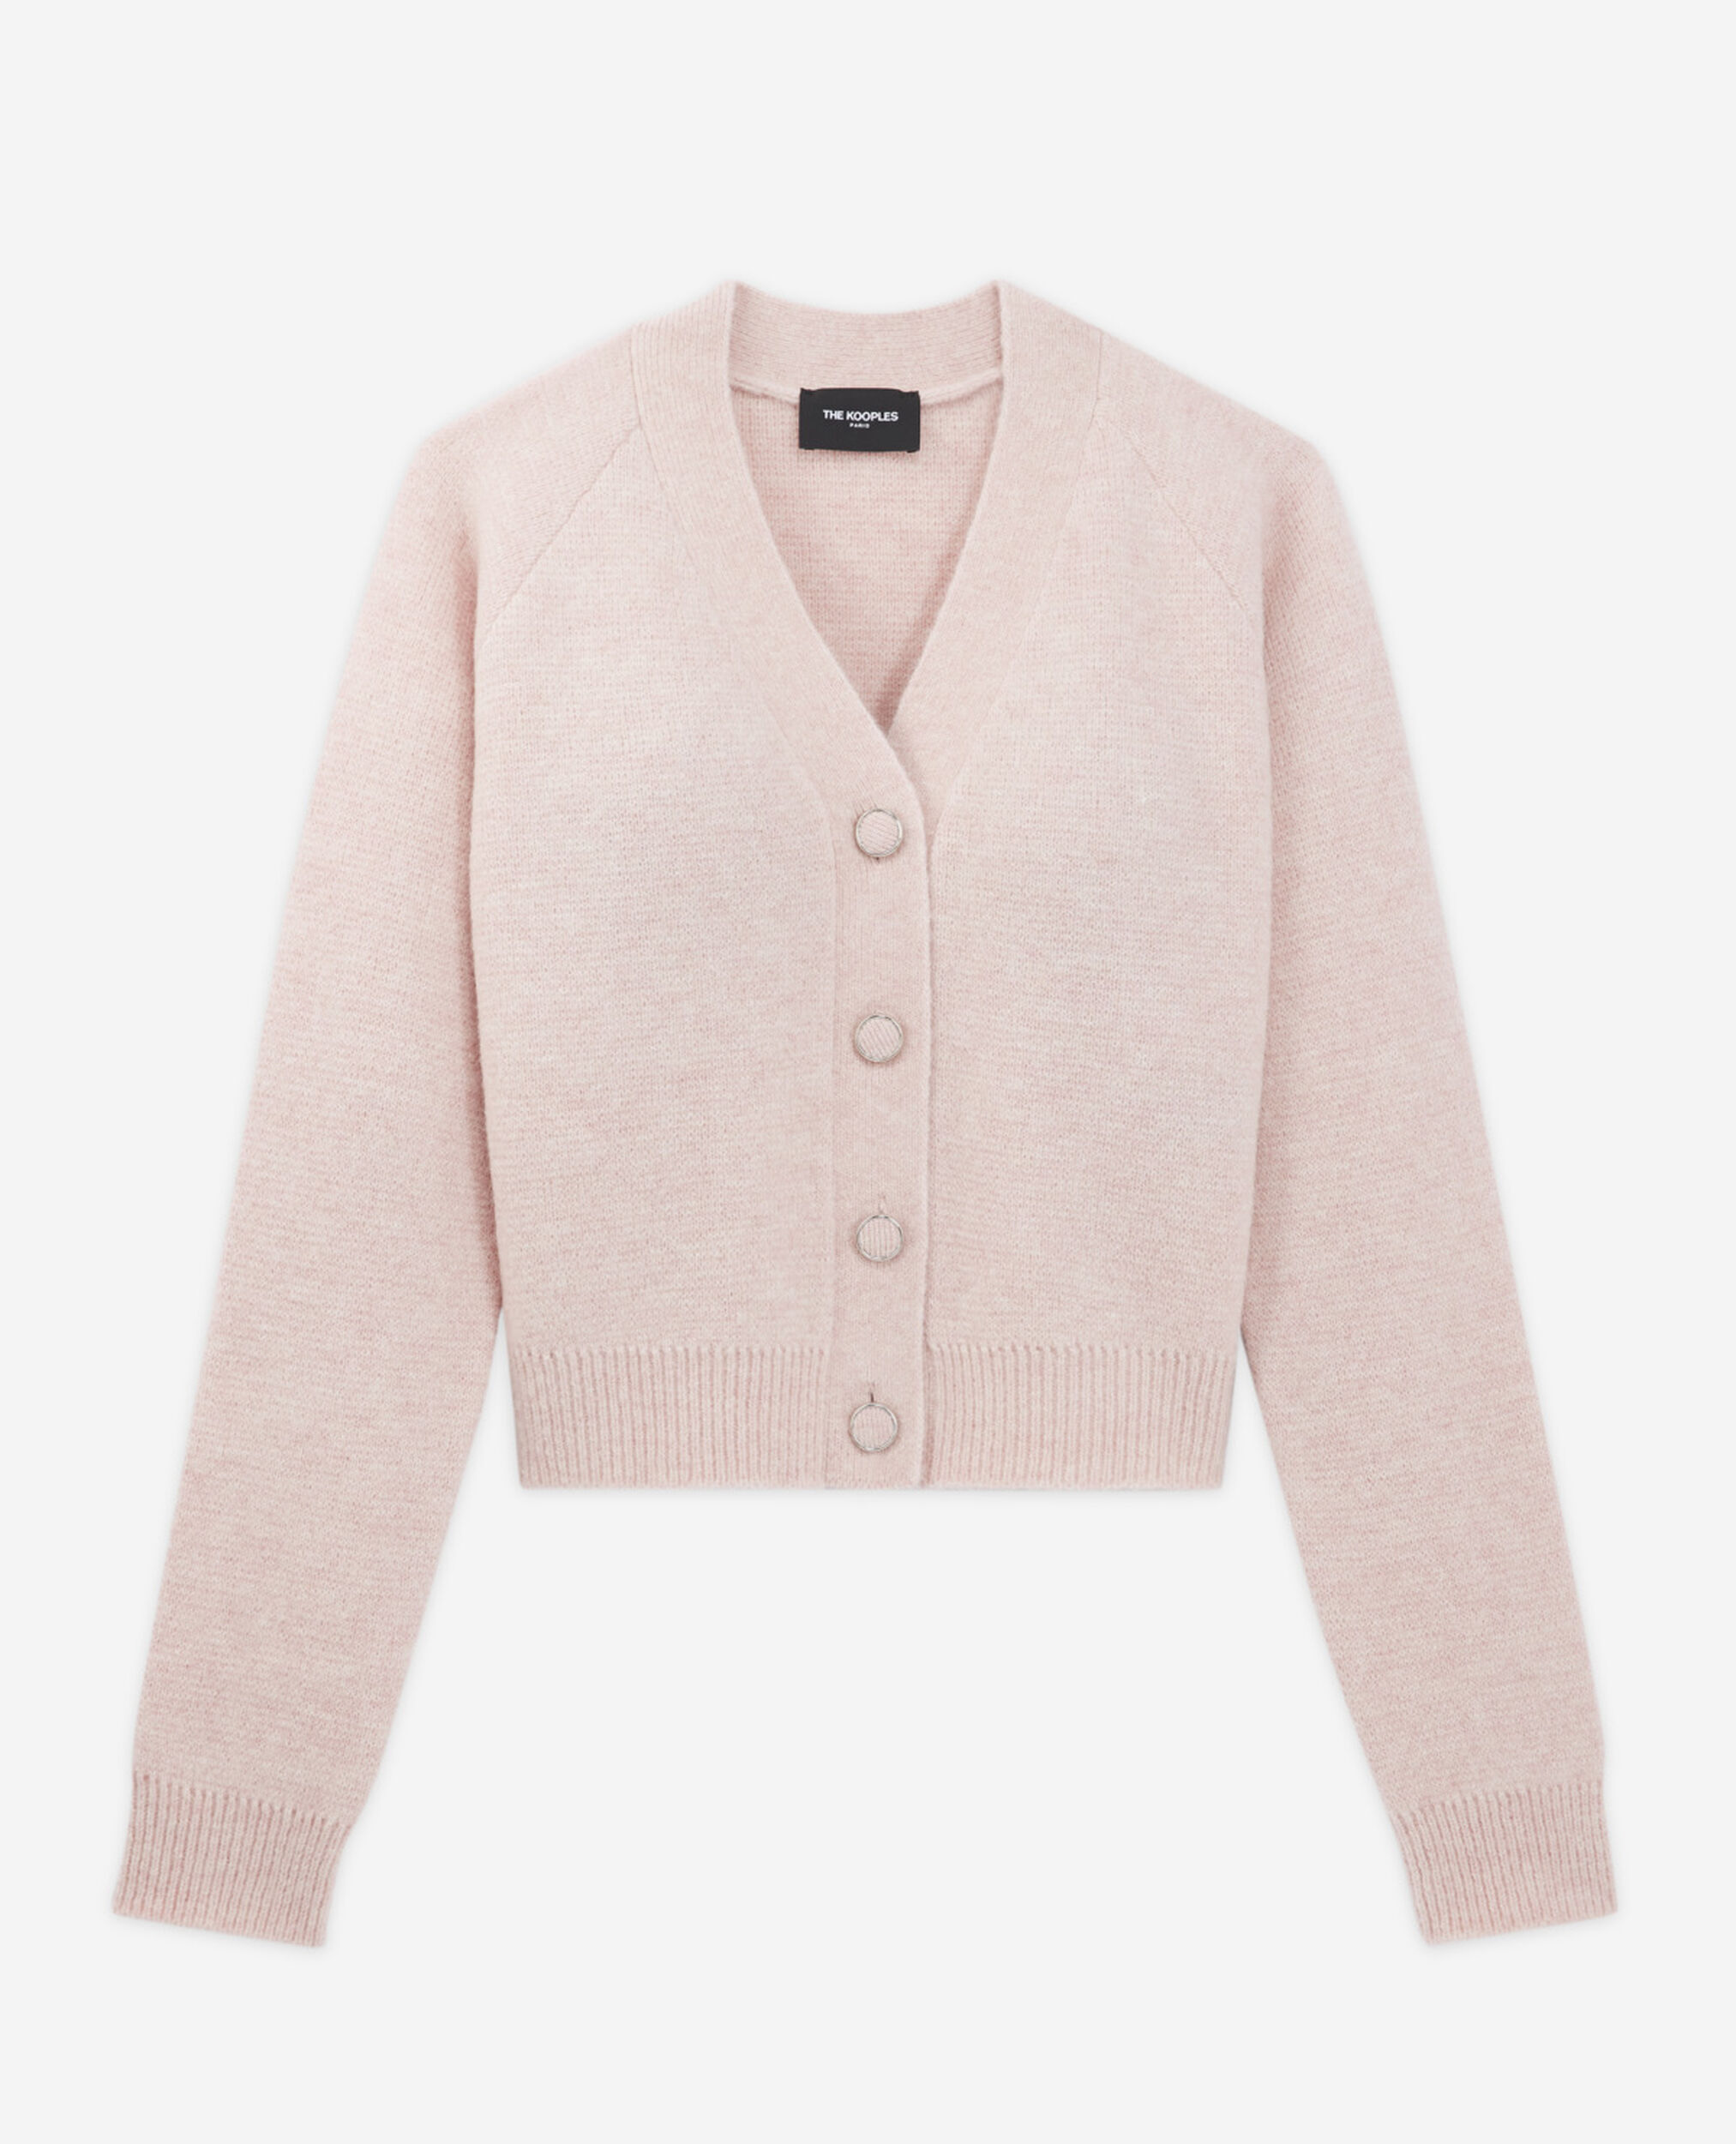 Cárdigan corto rosa de lana con bolsillos, PINK, hi-res image number null